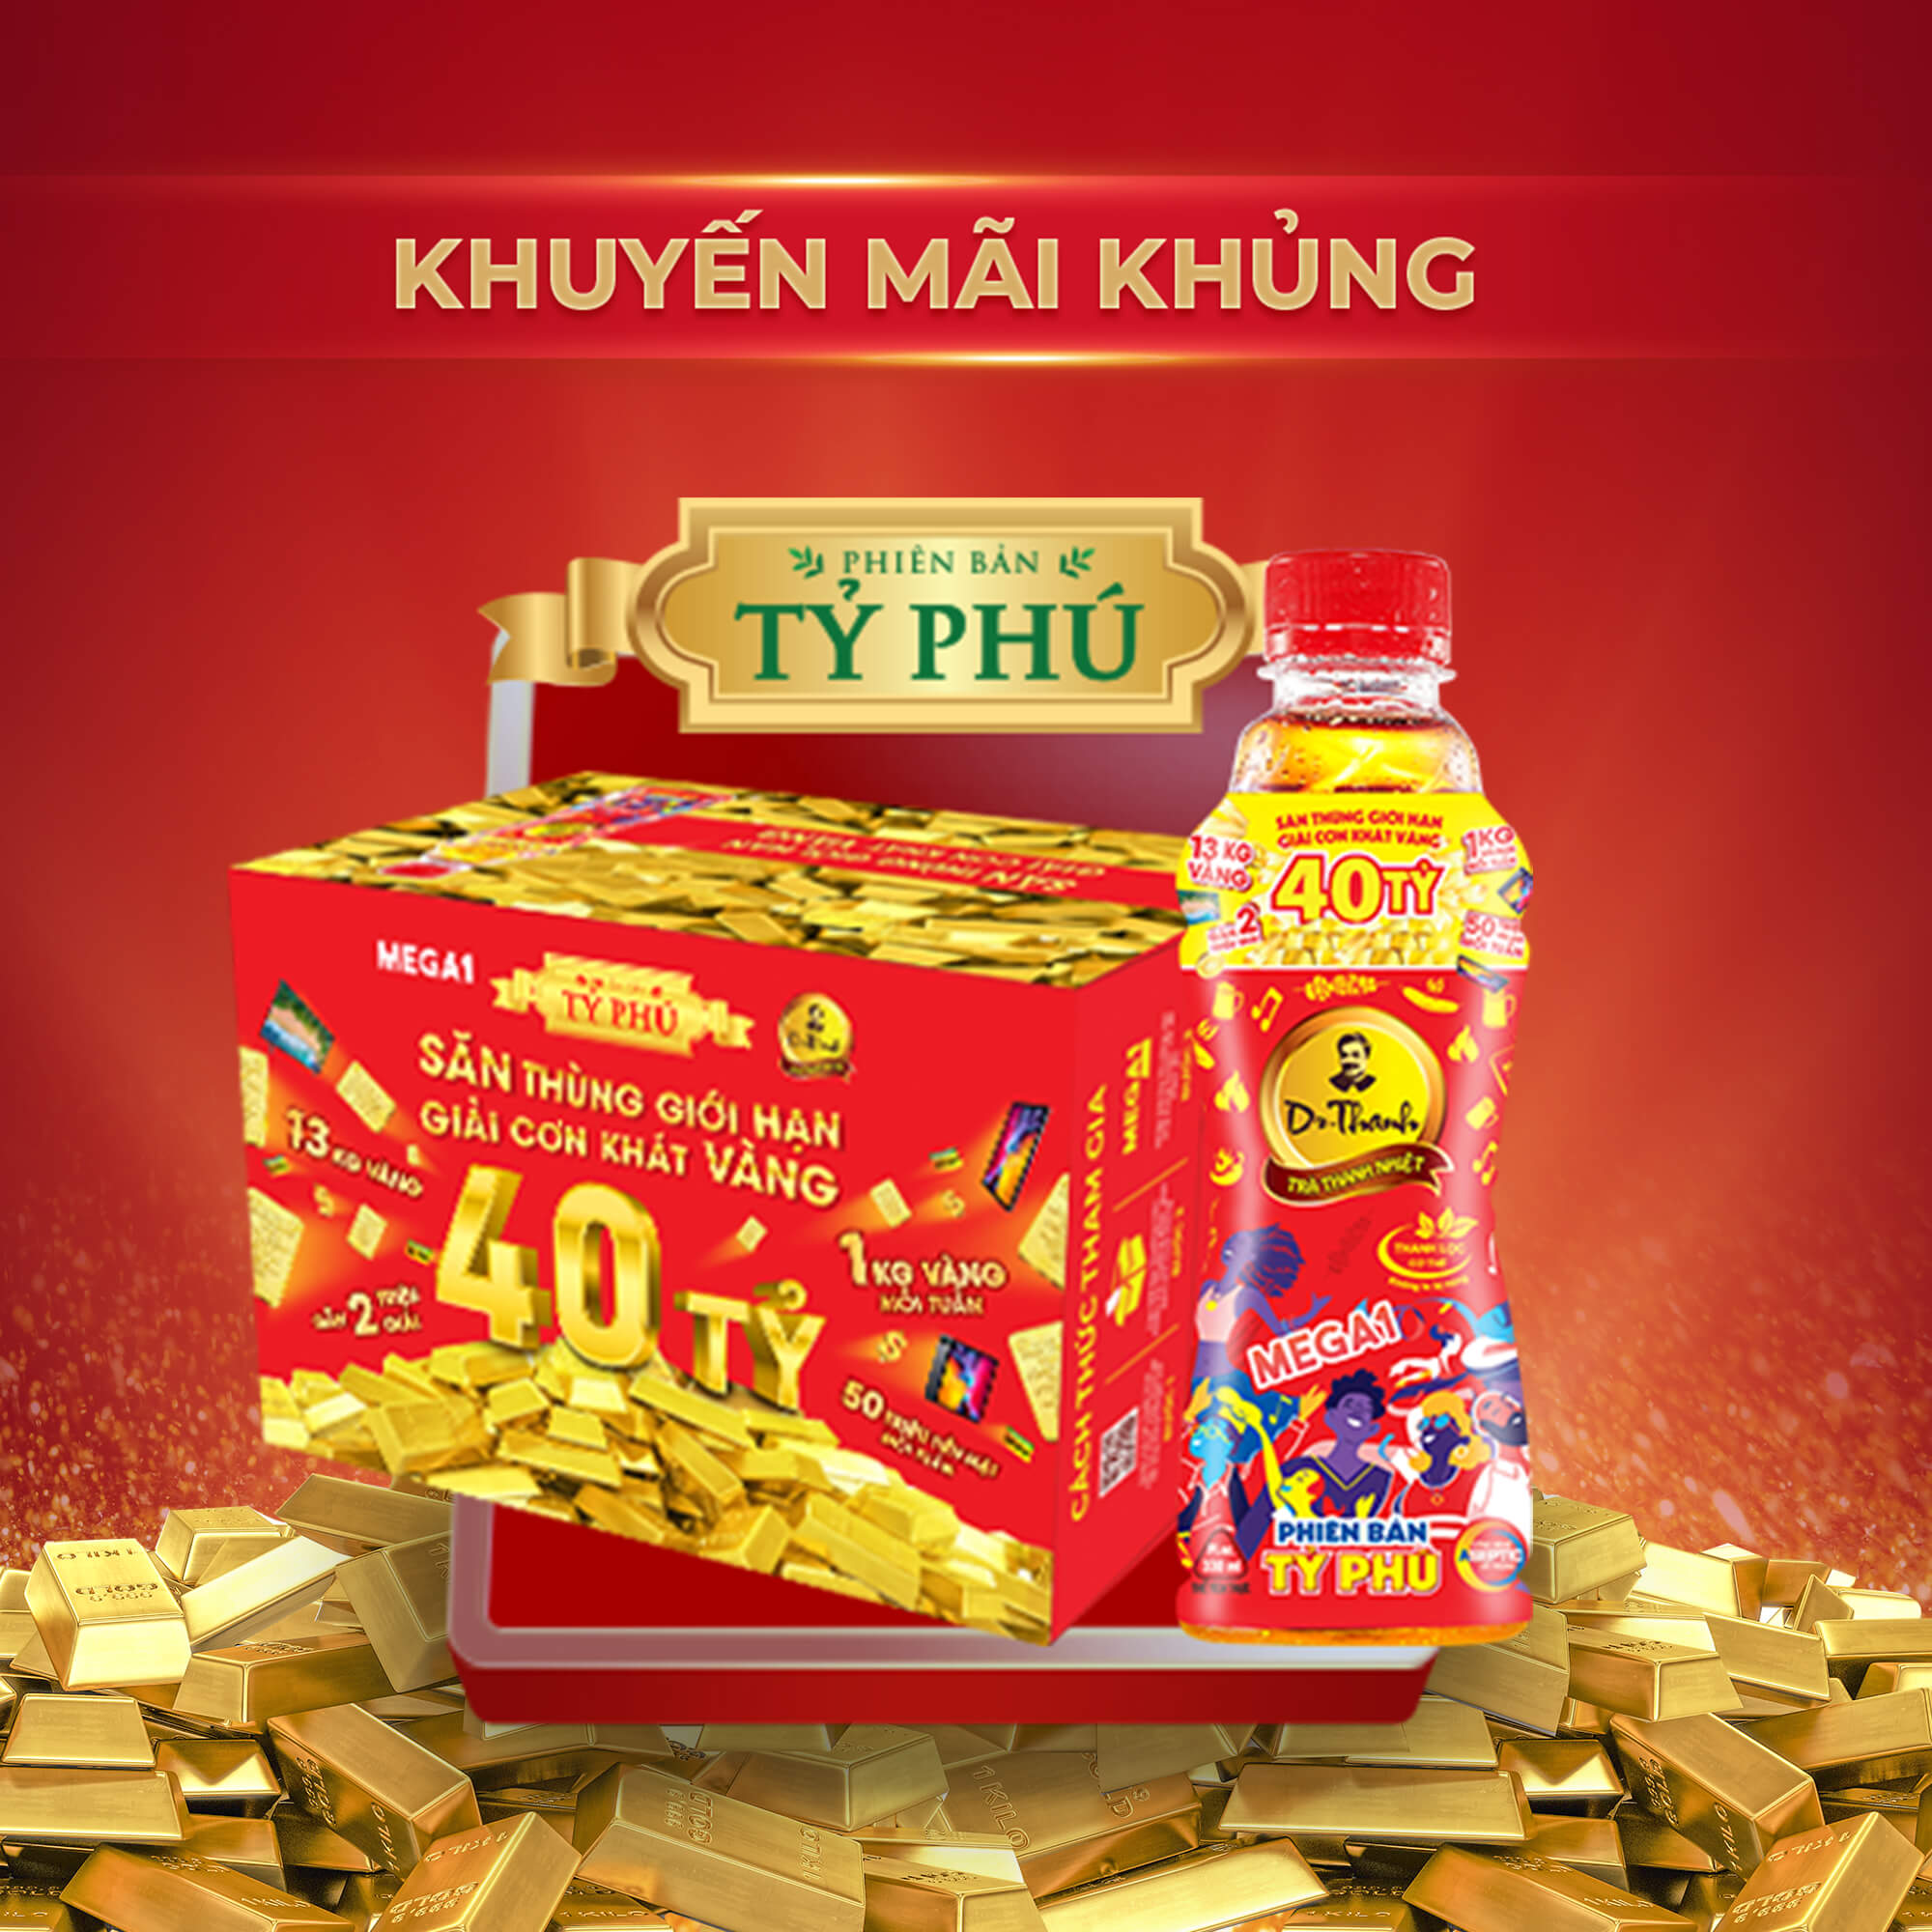 Trà Thảo Mộc Thanh Nhiệt Dr. Thanh - 330ml(Dr Thanh soft drink)